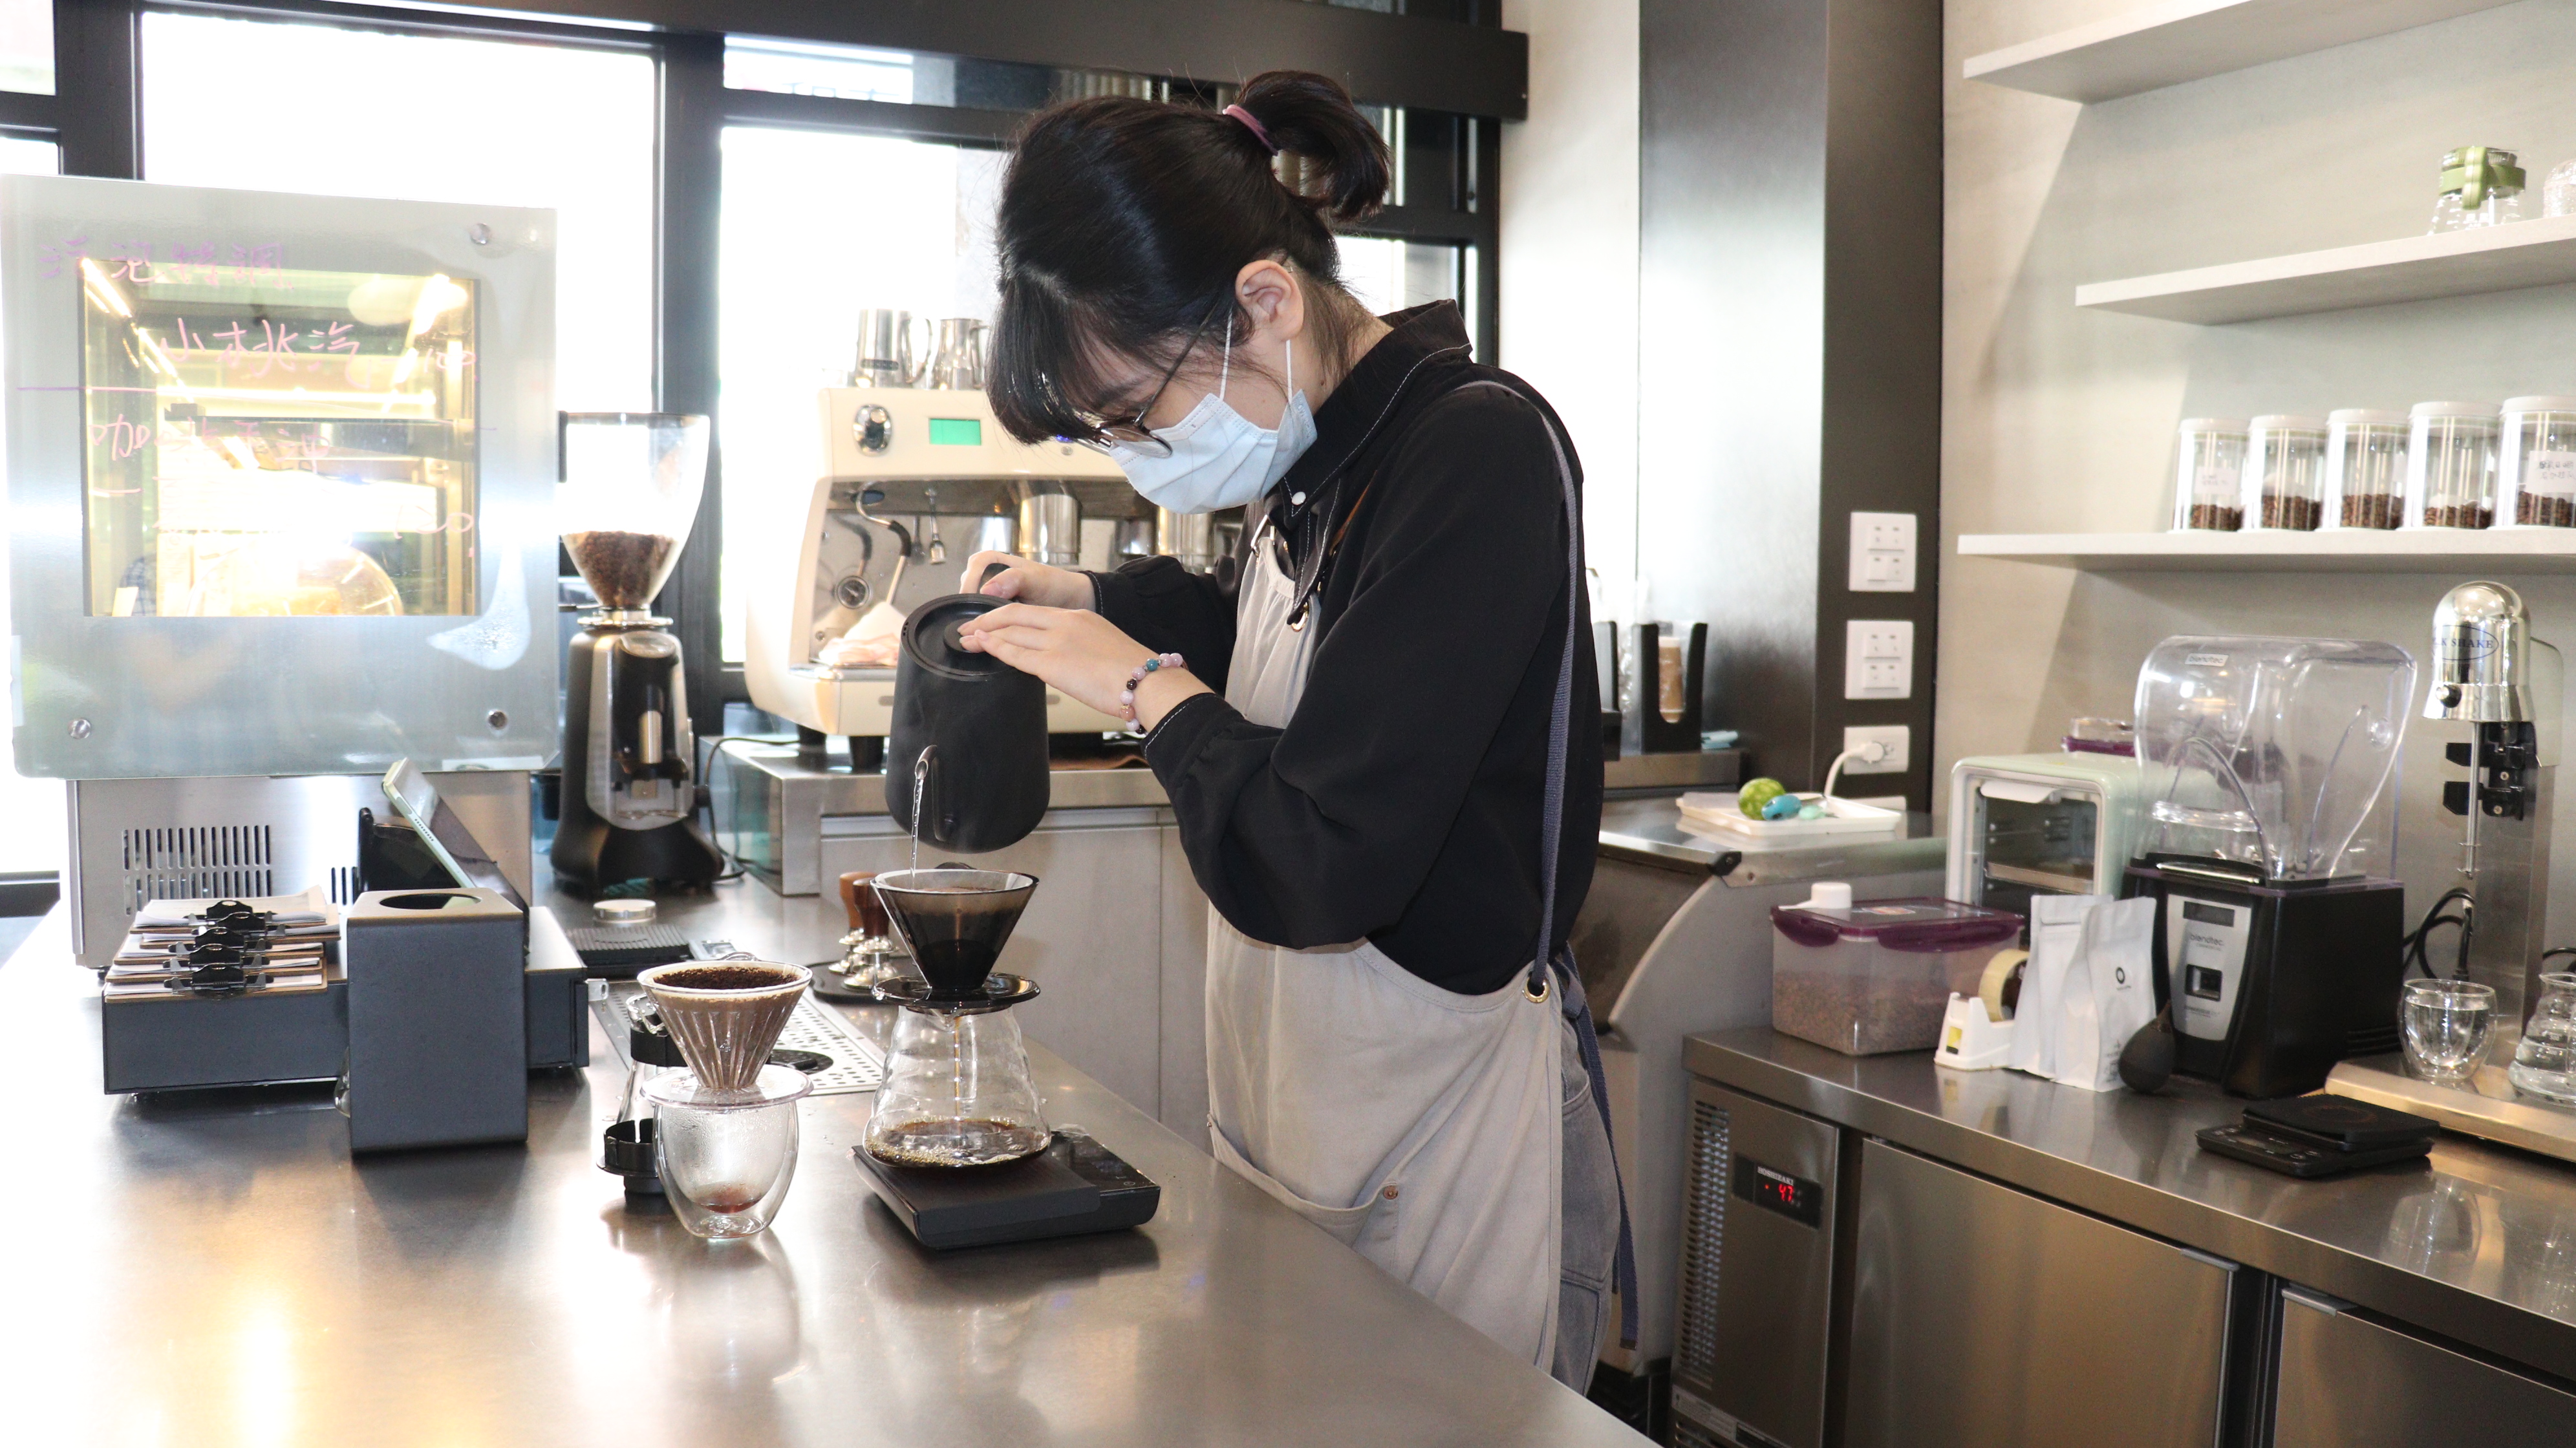 八年級生林書嫻因愛上手沖咖啡，參加委外職前訓練成功考取證照，並投入近百萬創業圓夢，目前已穩定開業超過半年。